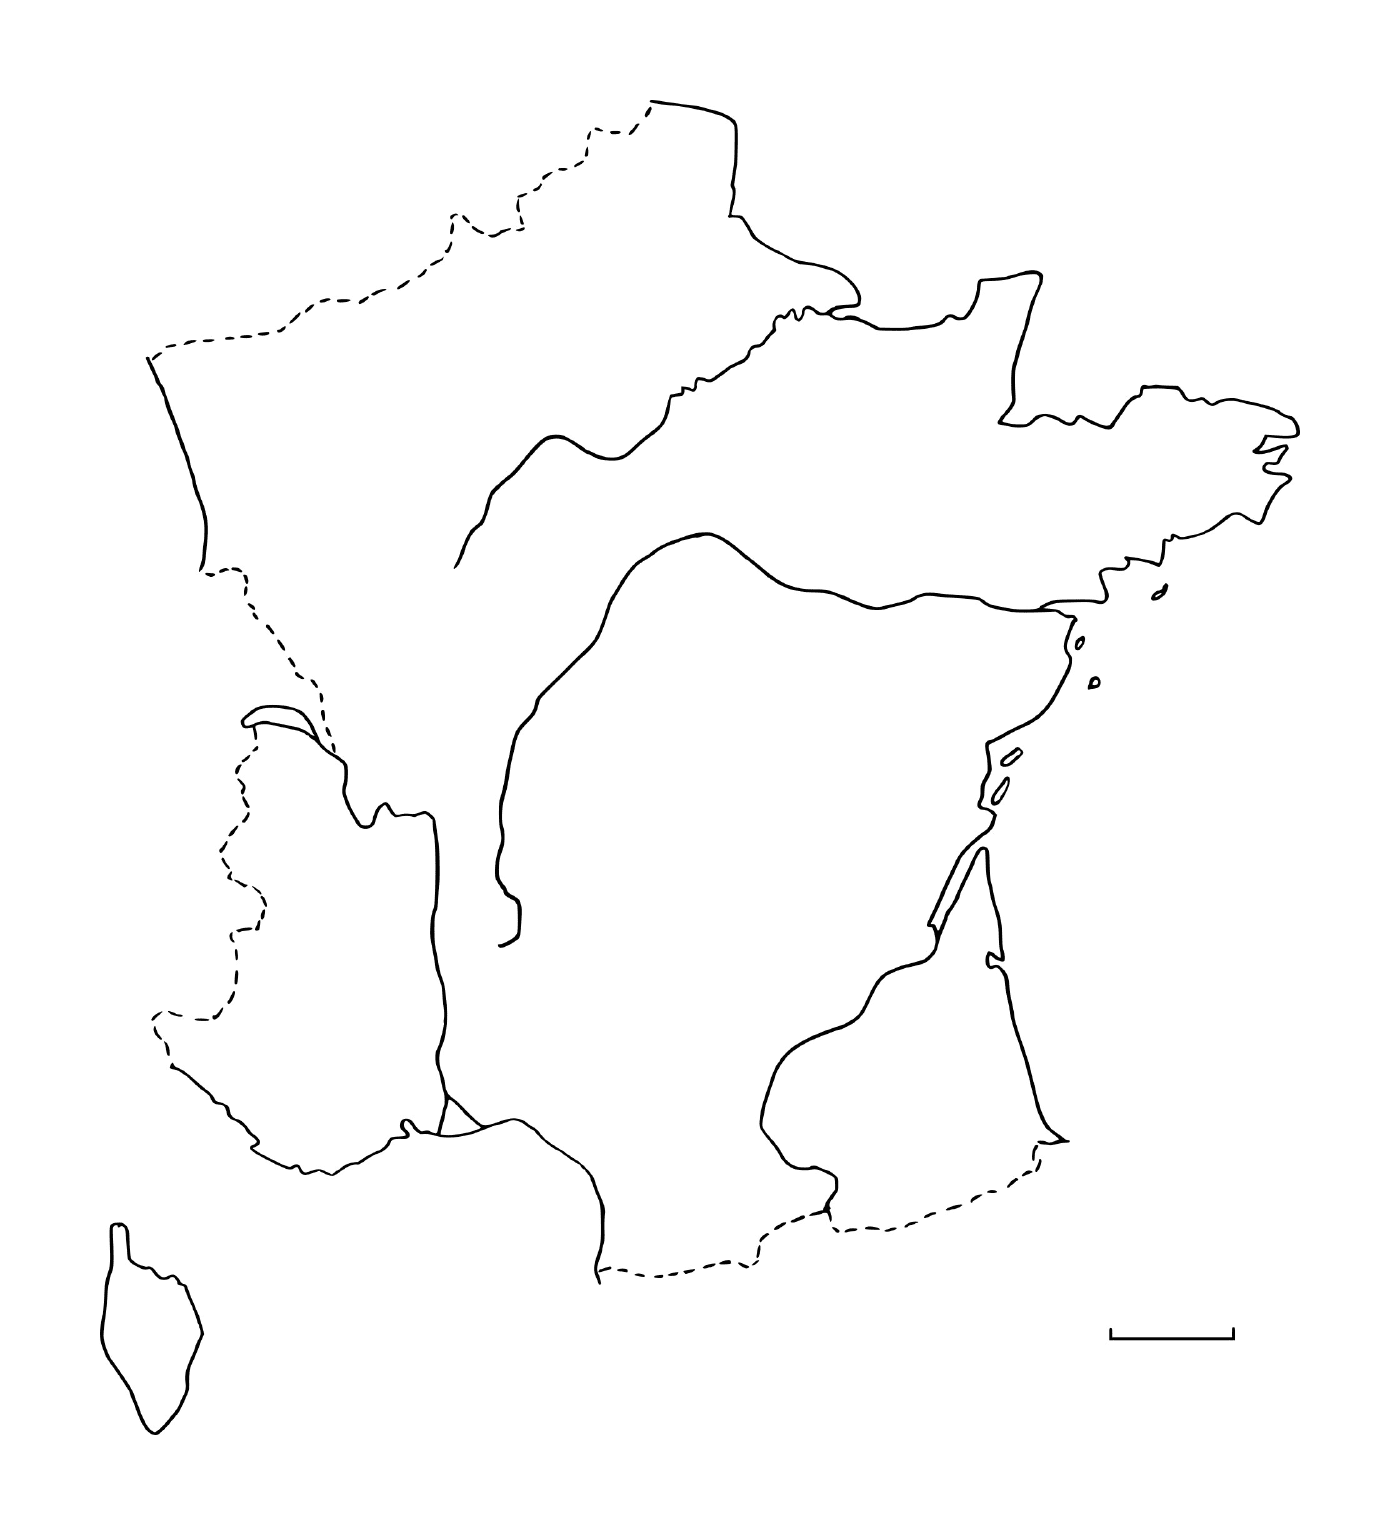  Mapa da França virgem 